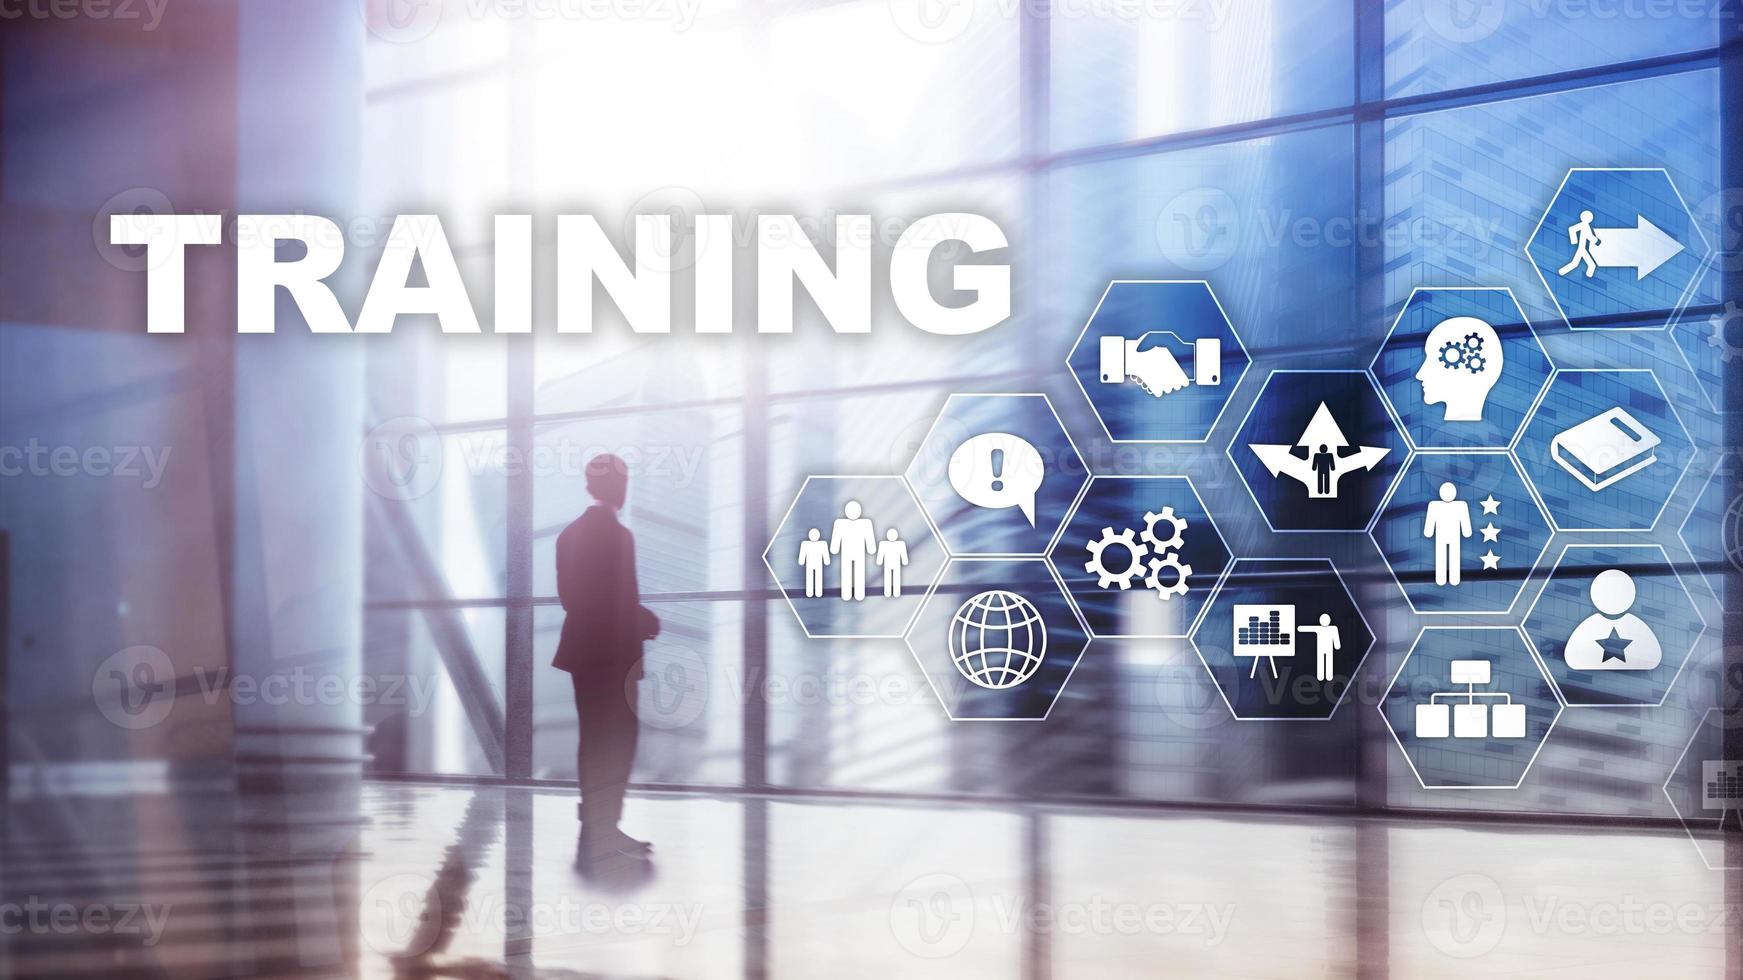 bedrijfstrainingsconcept. training webinar e-learning. financiële technologie en communicatieconcept. foto